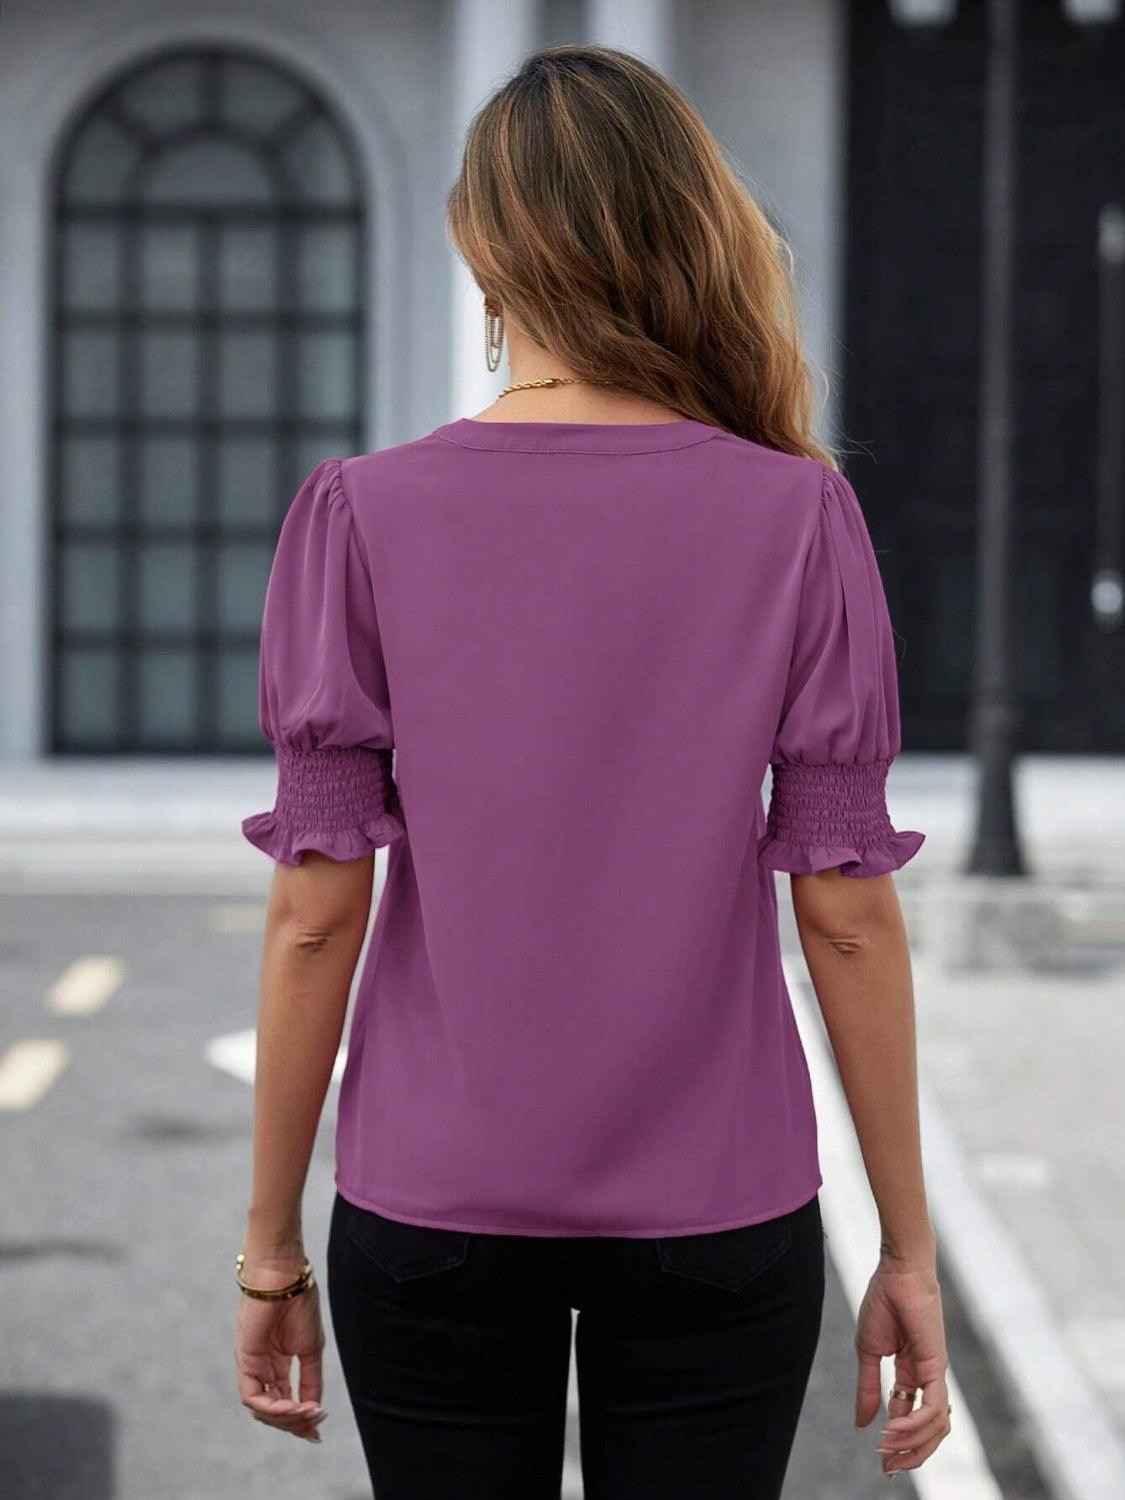 a woman walking down a street wearing a purple top